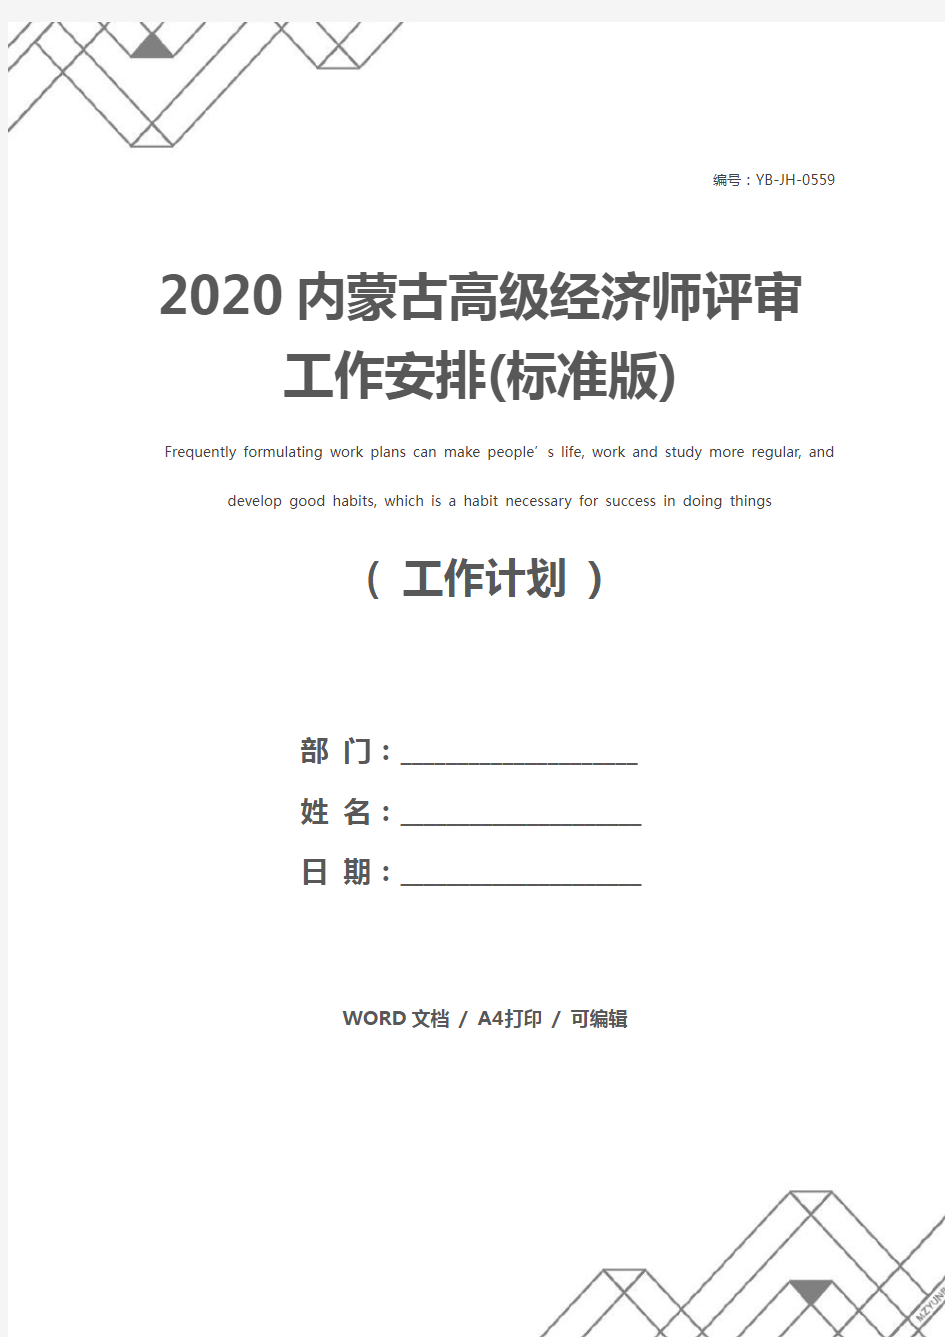 2020内蒙古高级经济师评审工作安排(标准版)